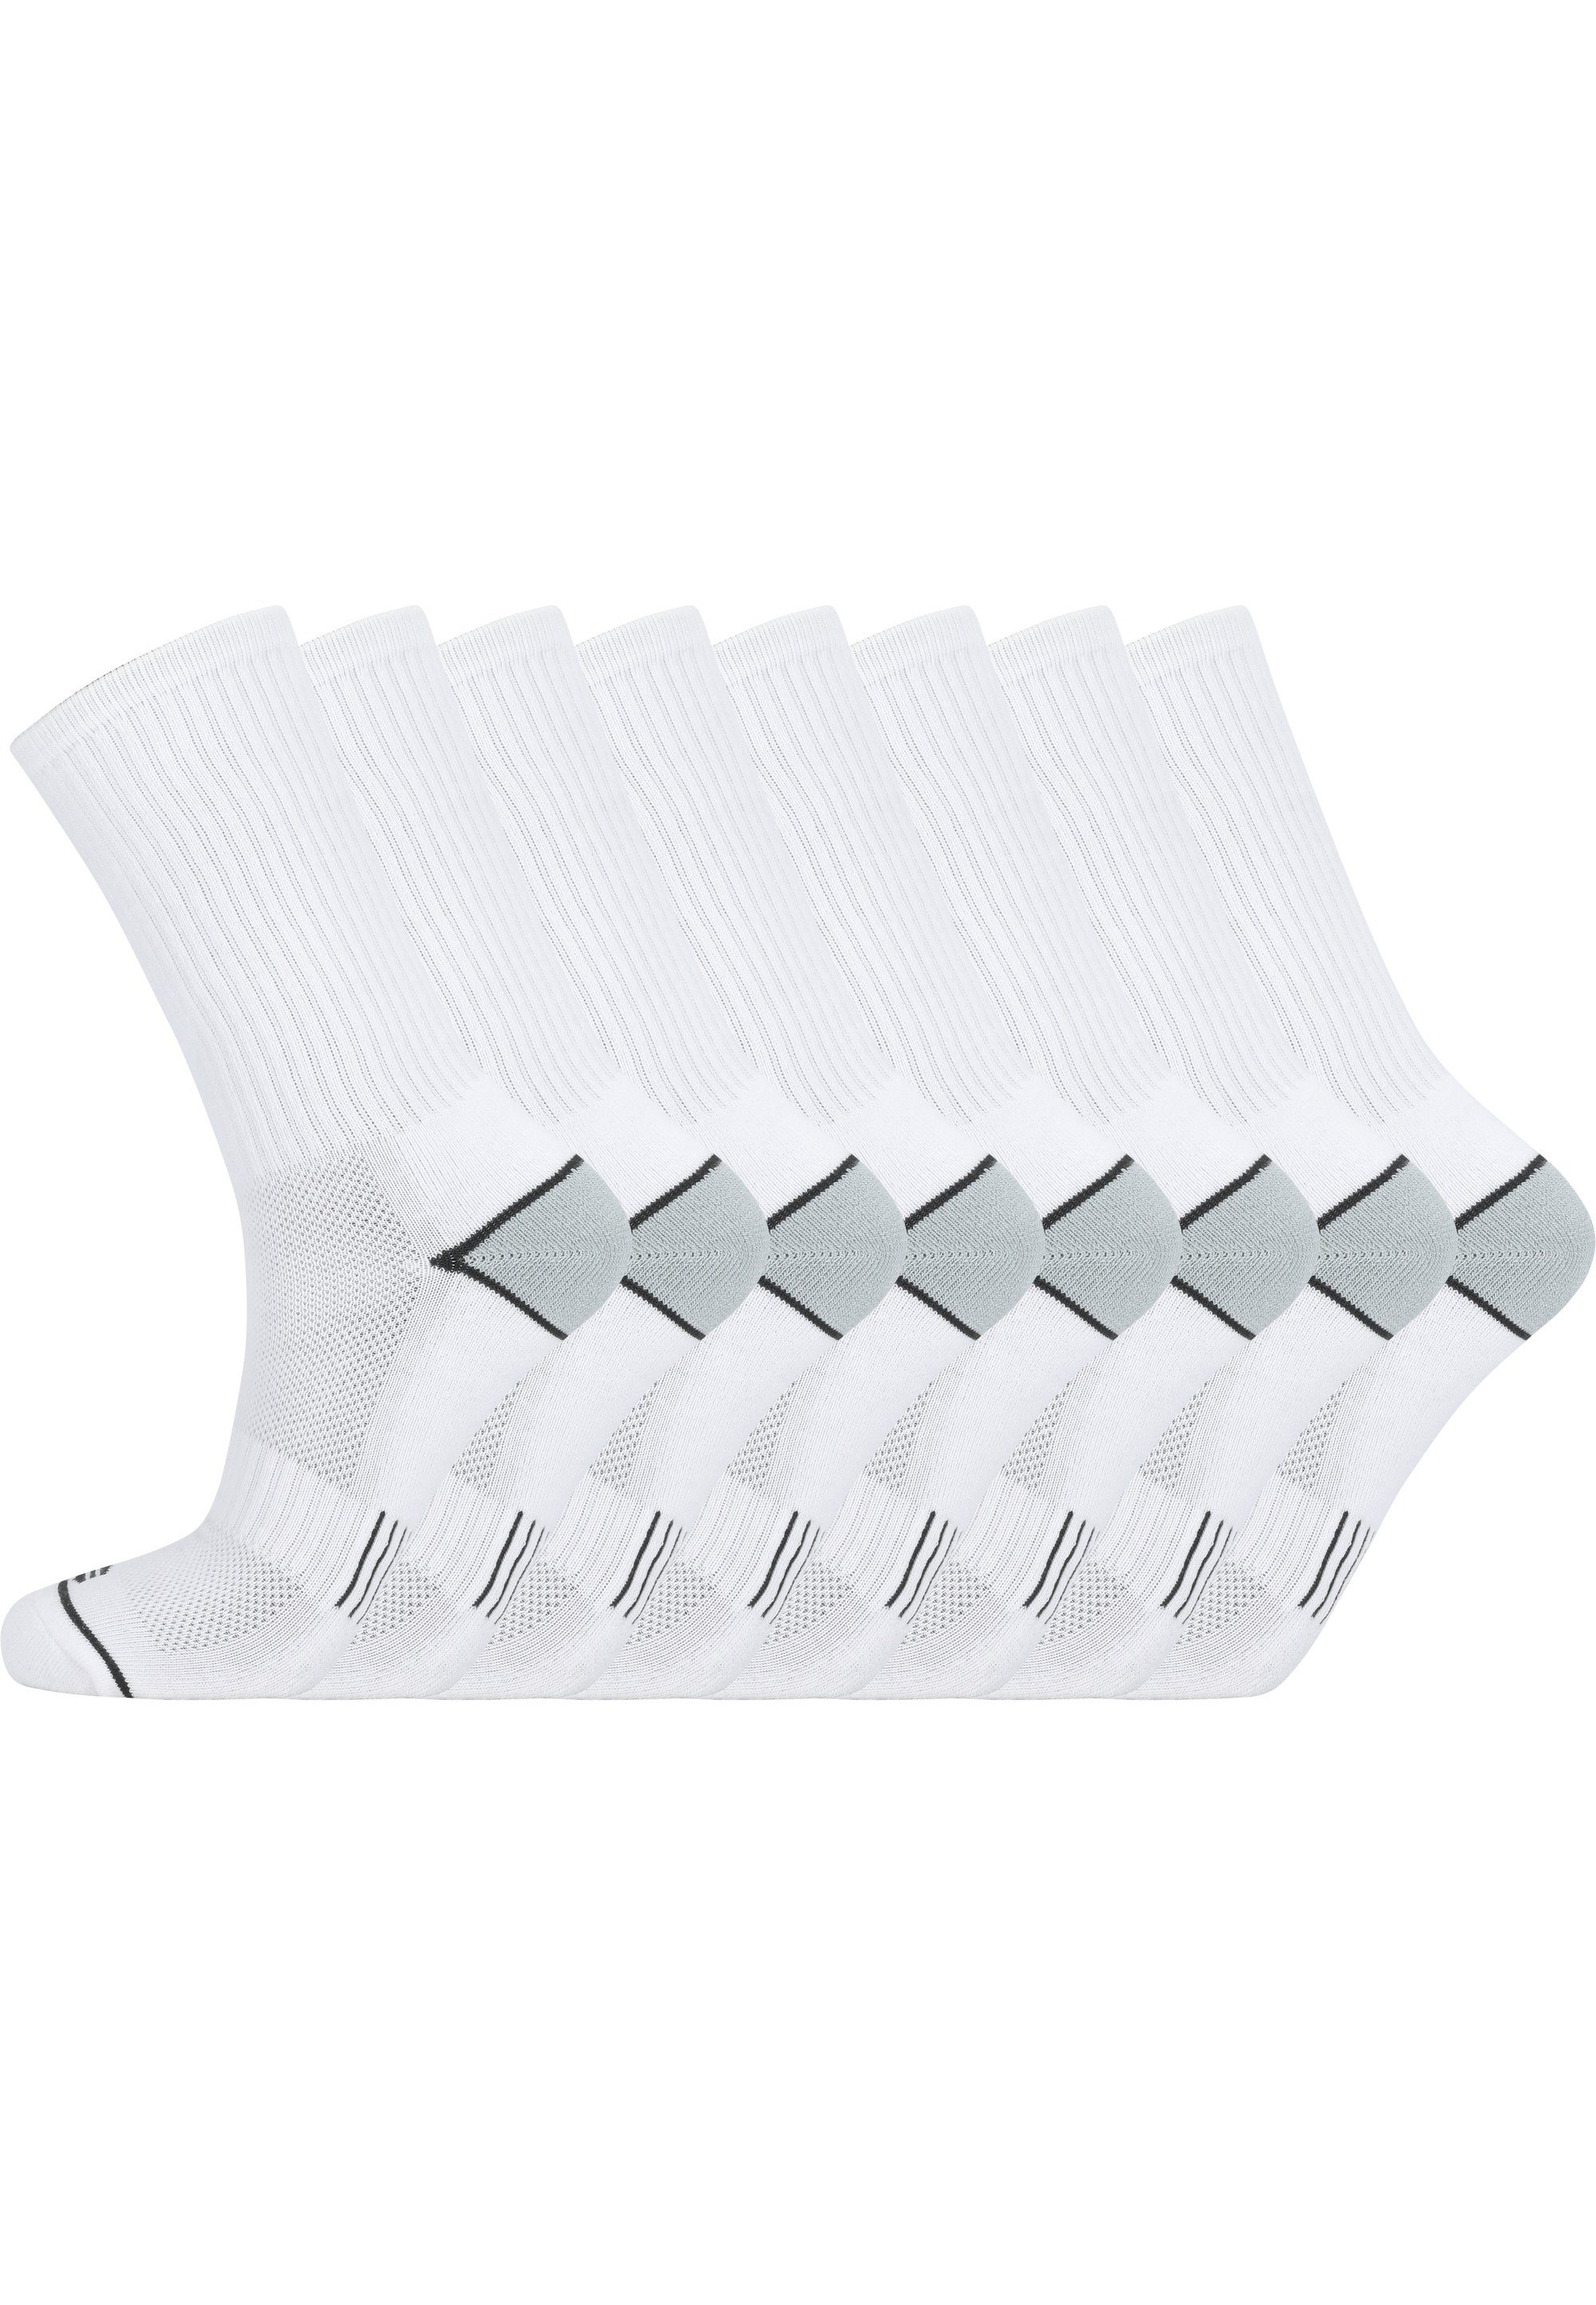 ENDURANCE Socken Hoope (8-Paar) in atmungsaktiver Qualität weiß